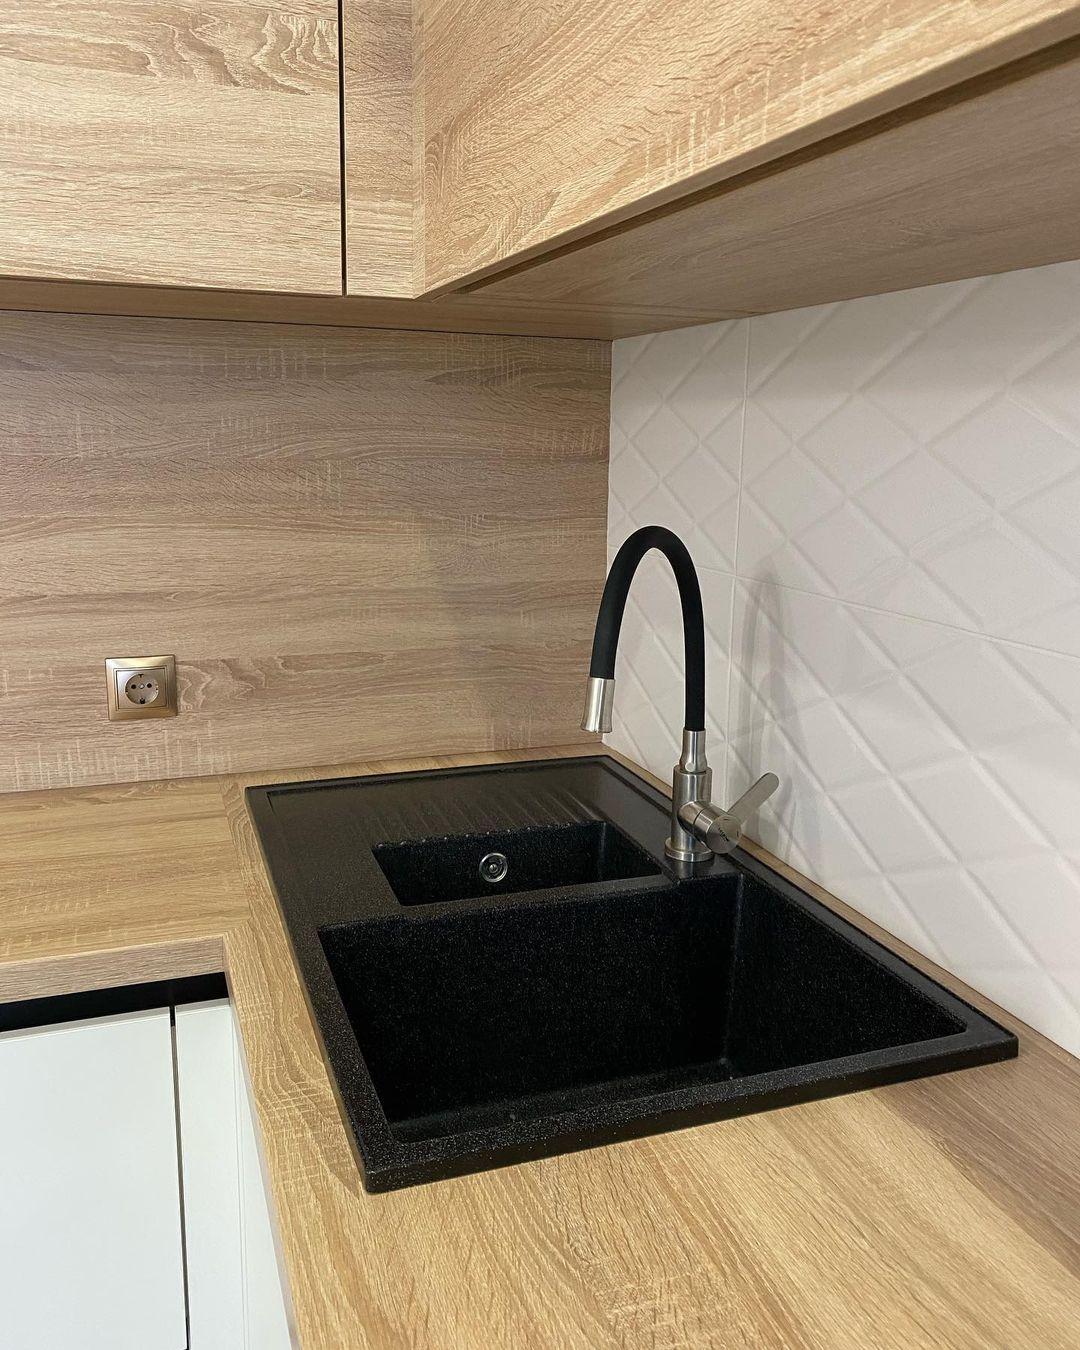 Белый кухонный гарнитур-Угловая кухня с отдельной вытяжкой «Модель 786»-фото4